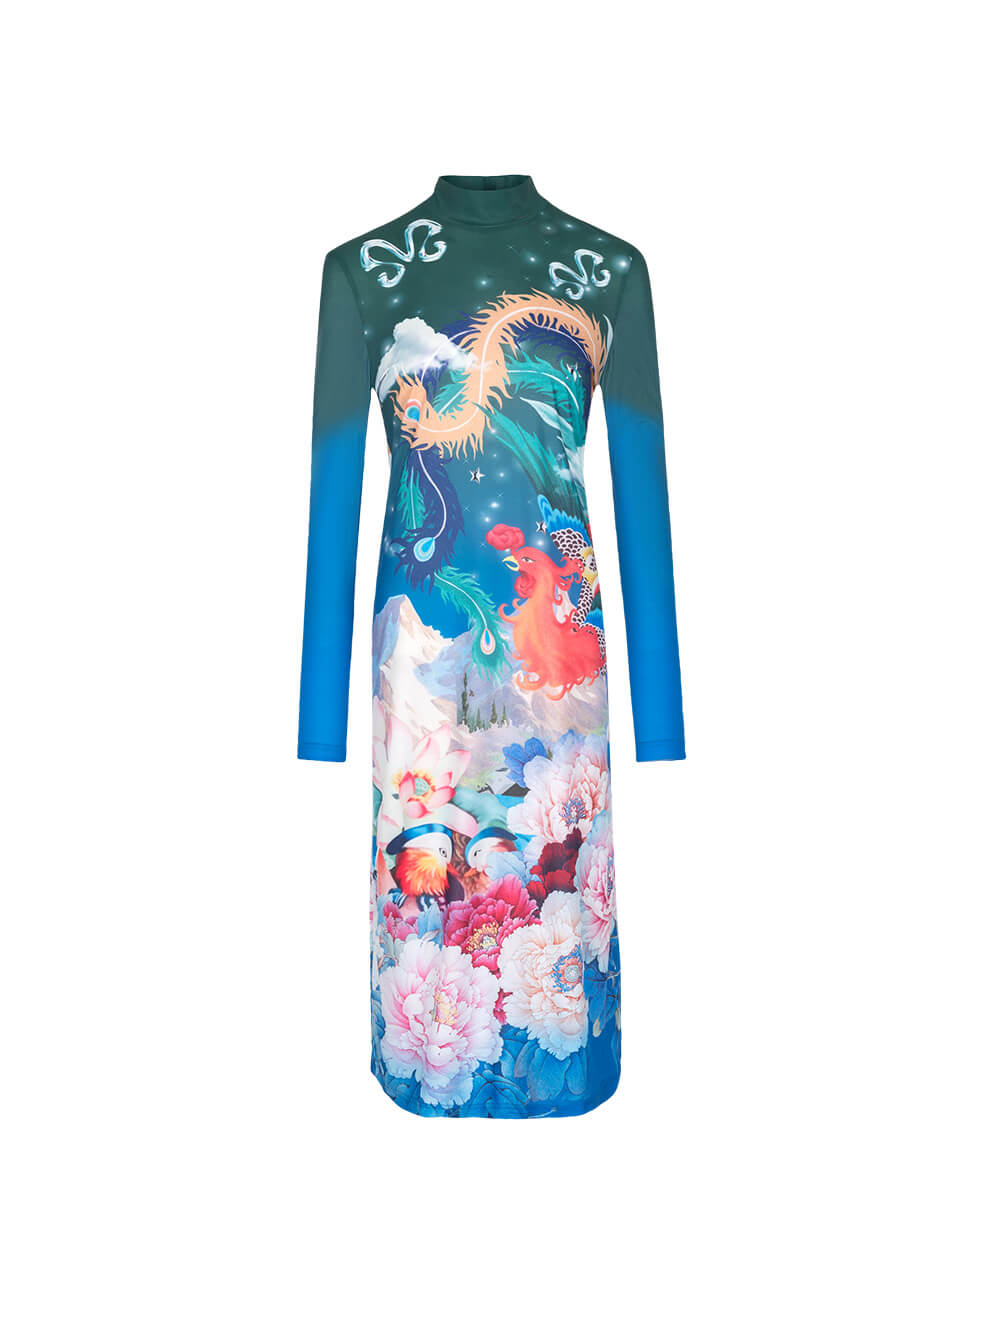 MUKZIN Shift Print Bottoming Dress-Chinese style dress